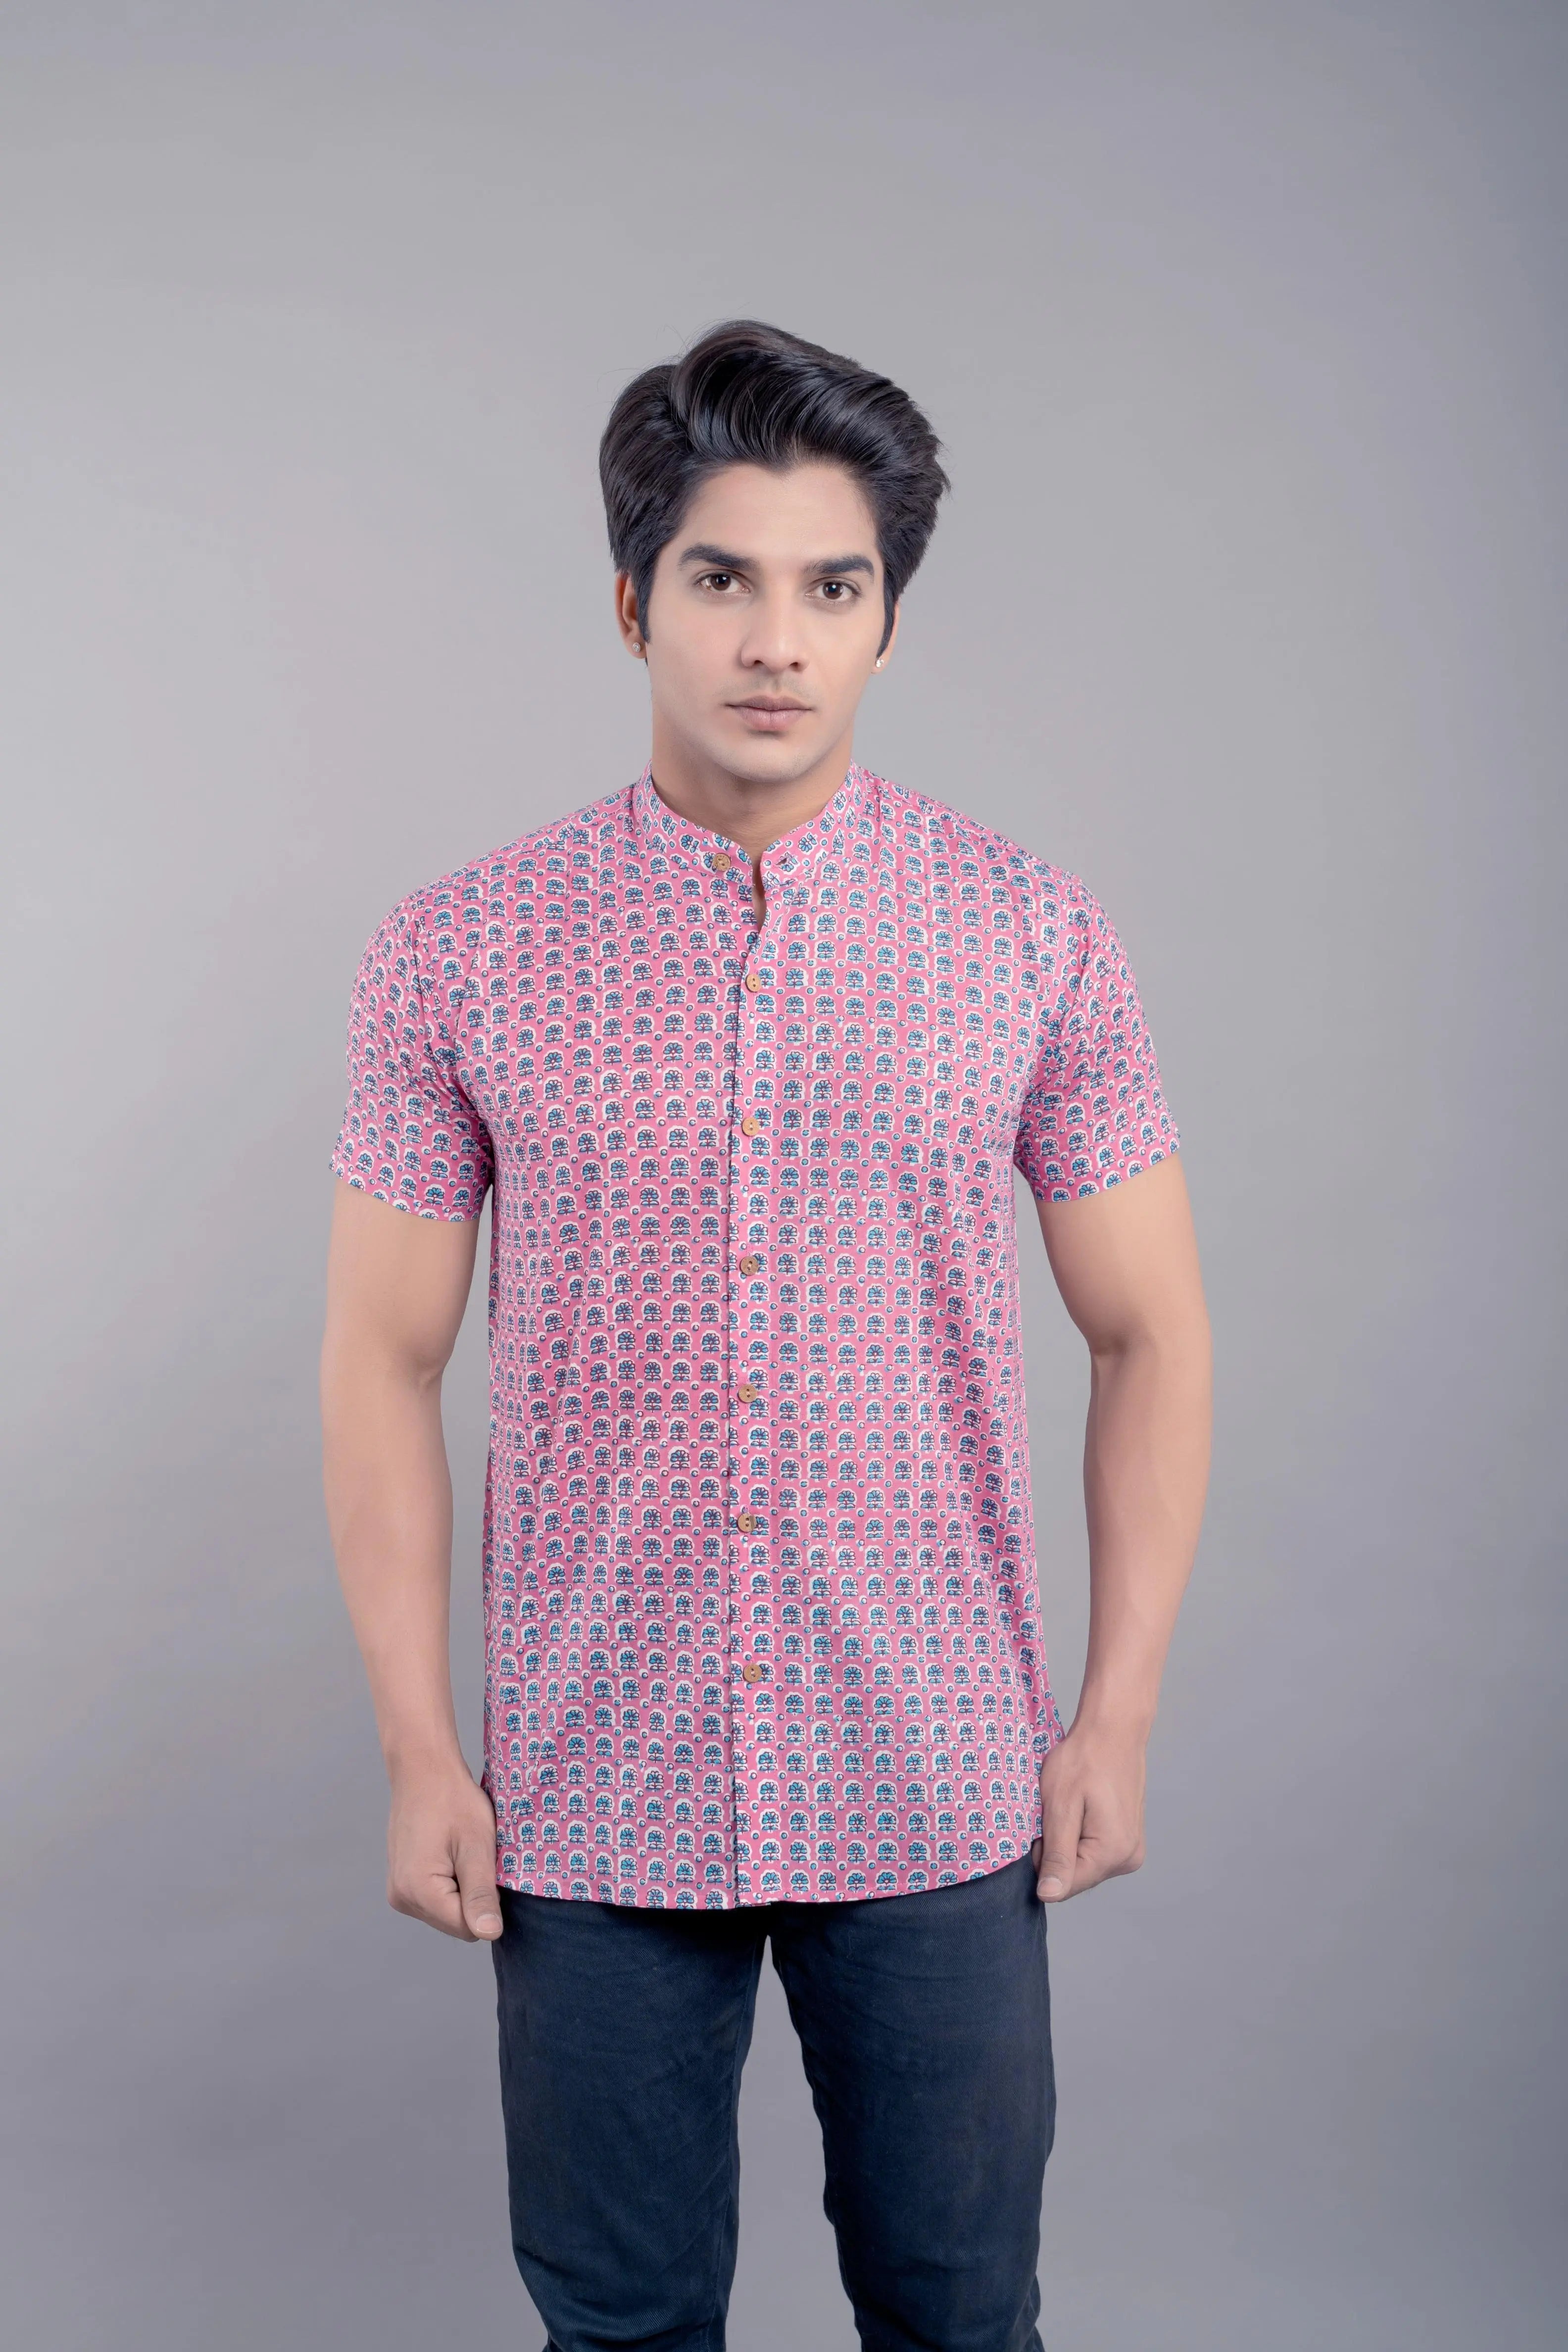 Firangi Yarn 100% Cotton Block Printed Men's Shirt- Pink